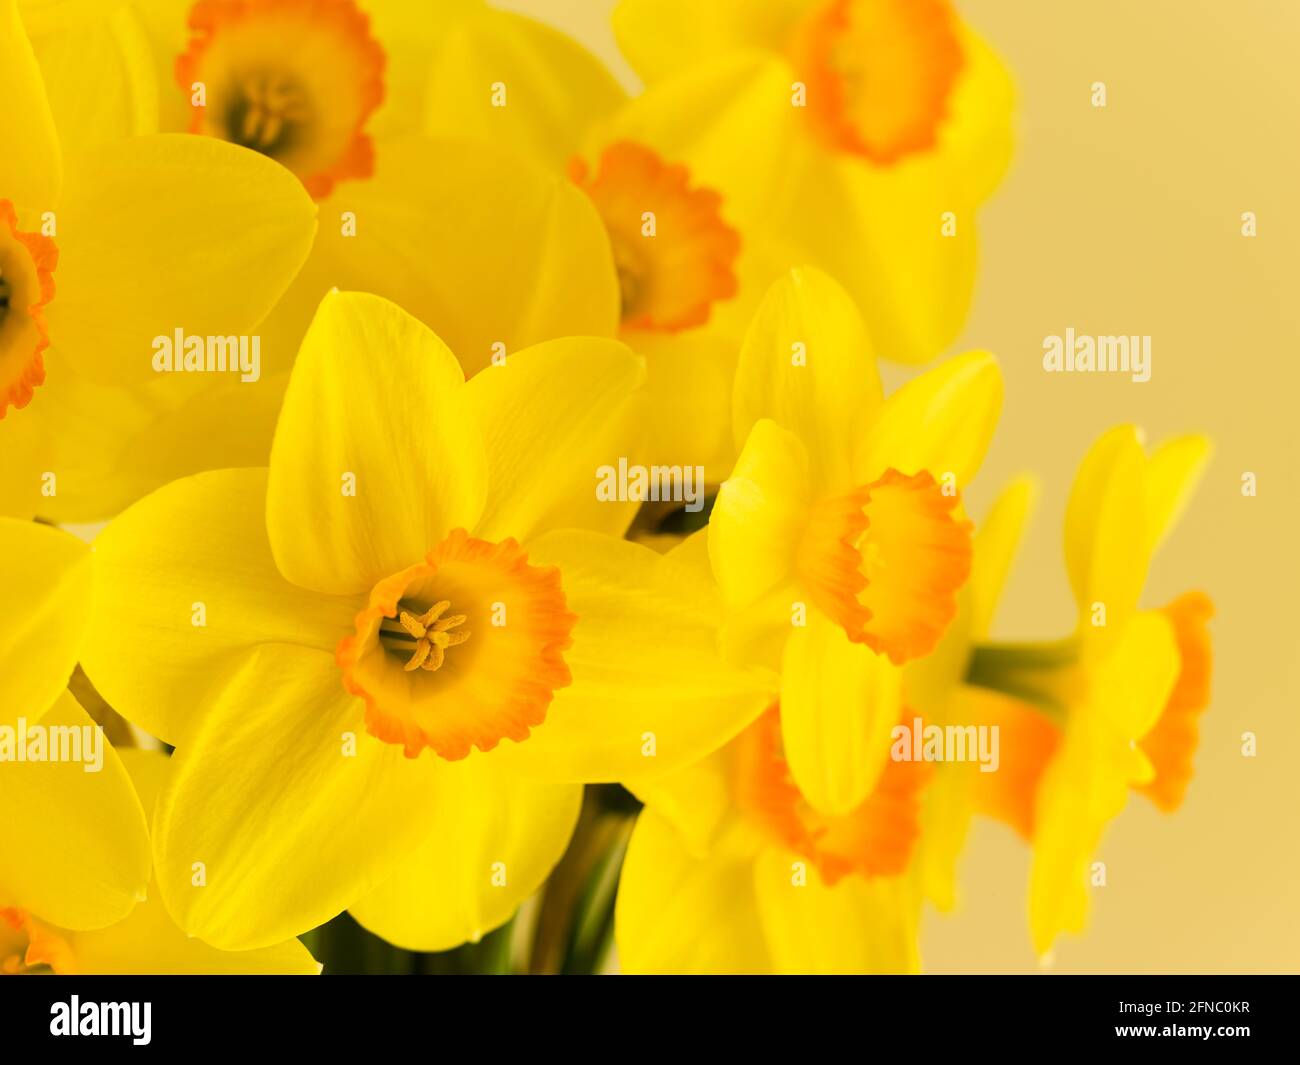 Arrangiamento floreale di narcisi. Vari nomi comuni, tra cui daffodil, narcissus e jonquil, sono usati per descrivere tutti o alcuni membri del genere. Foto Stock